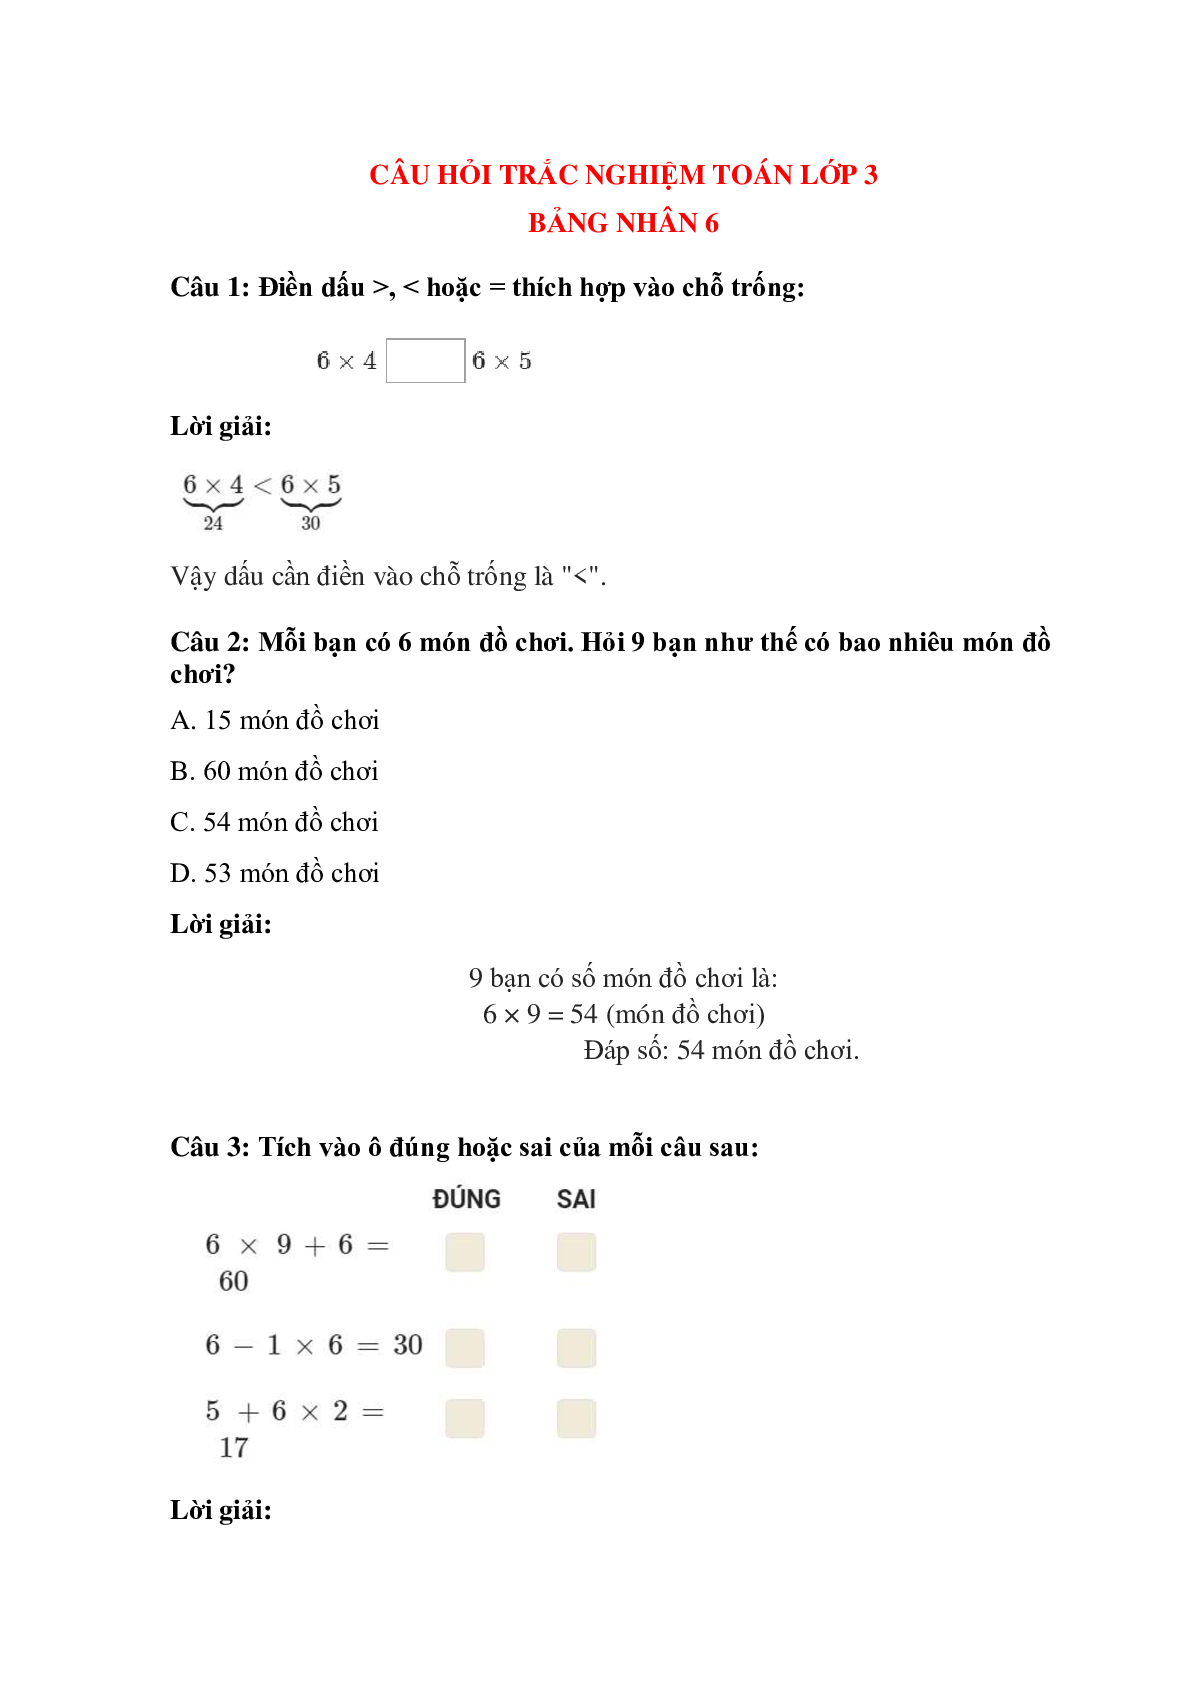 Trắc nghiệm Bảng nhân 6 có đáp án – Toán lớp 3 (trang 1)